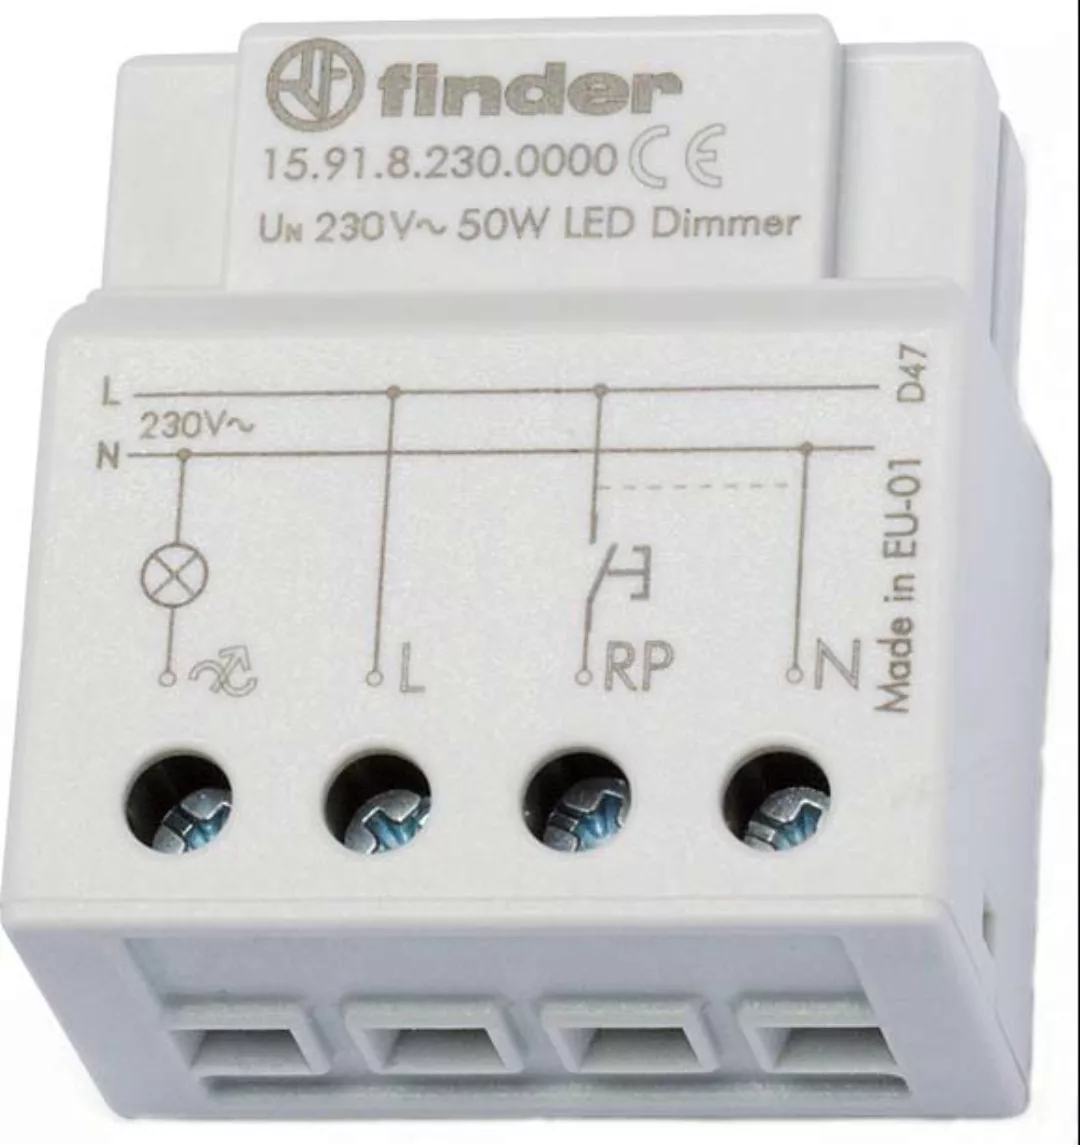 Finder Dimmer elektronisch 230VAC max.50W LED 15.91.8.230.0000 günstig online kaufen